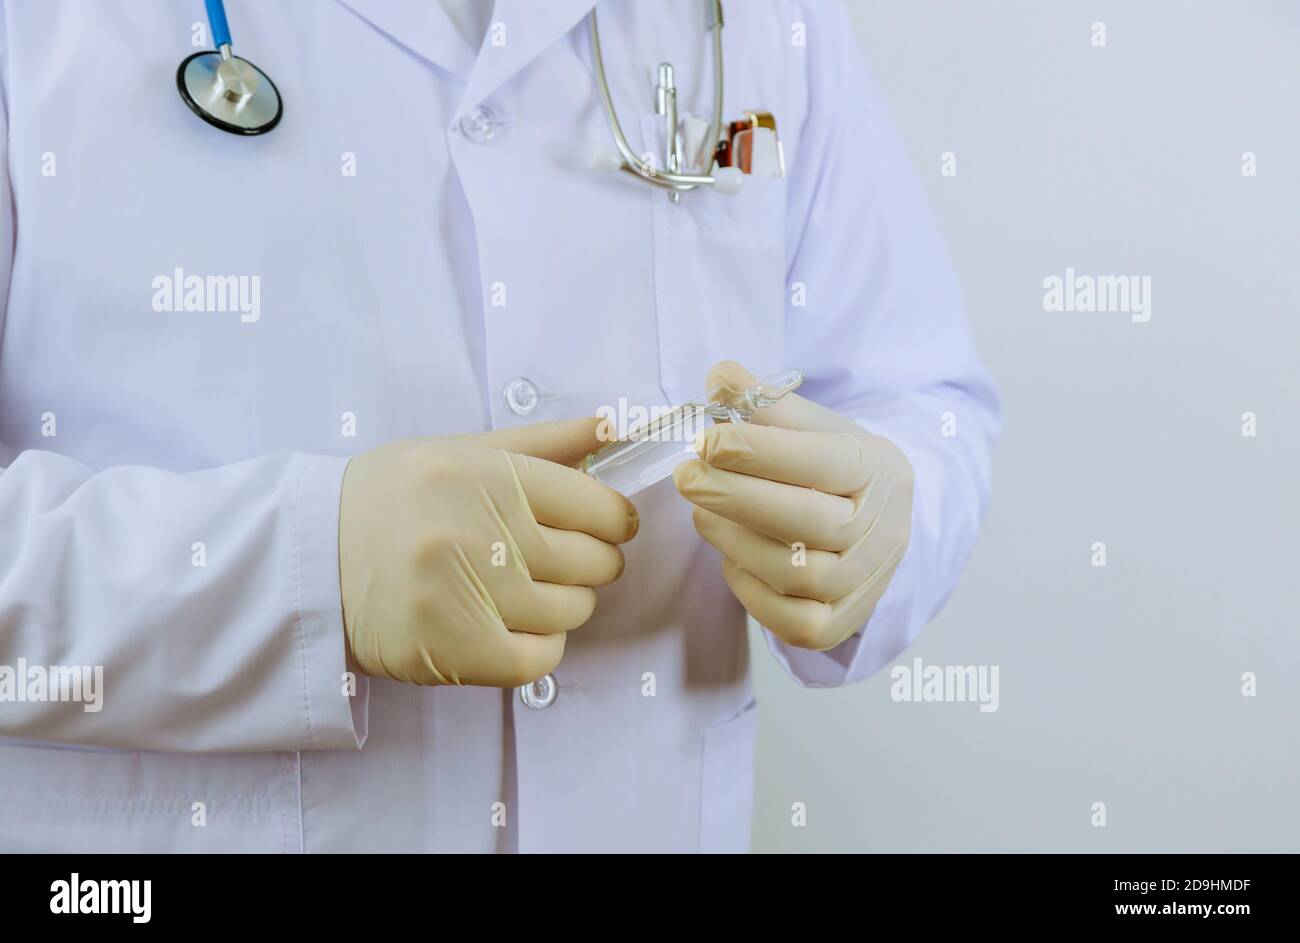 Das Medikament Handschuhe Arzt hält eine Ampulle für die Impfung Behandlung In seiner Hand konzentrieren sich auf die Ampulle Stockfoto